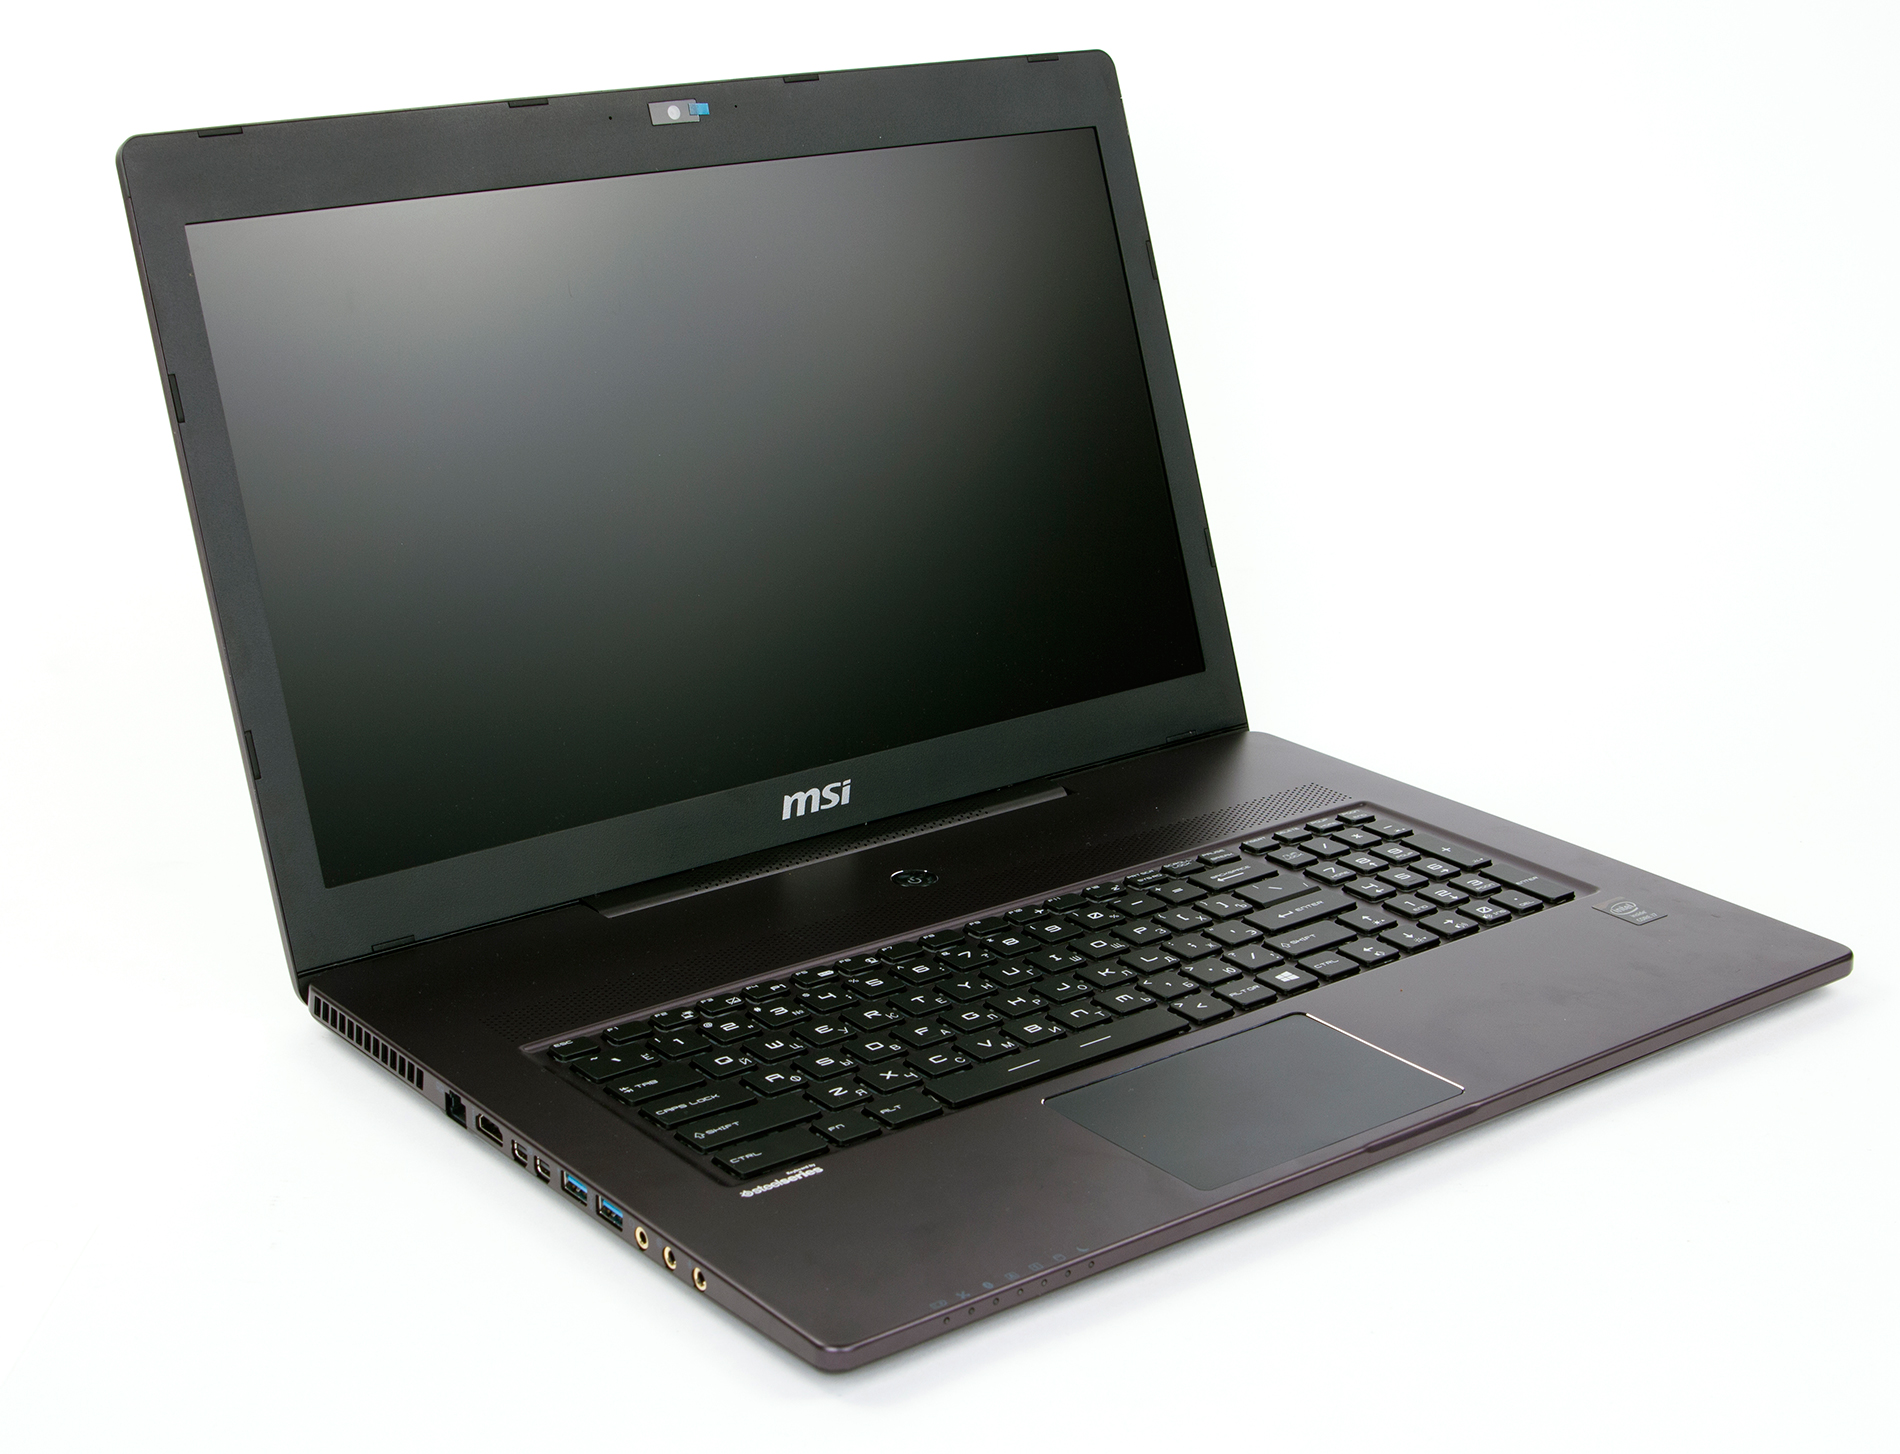 Игровой Ноутбук Msi Gs70 (Черный)